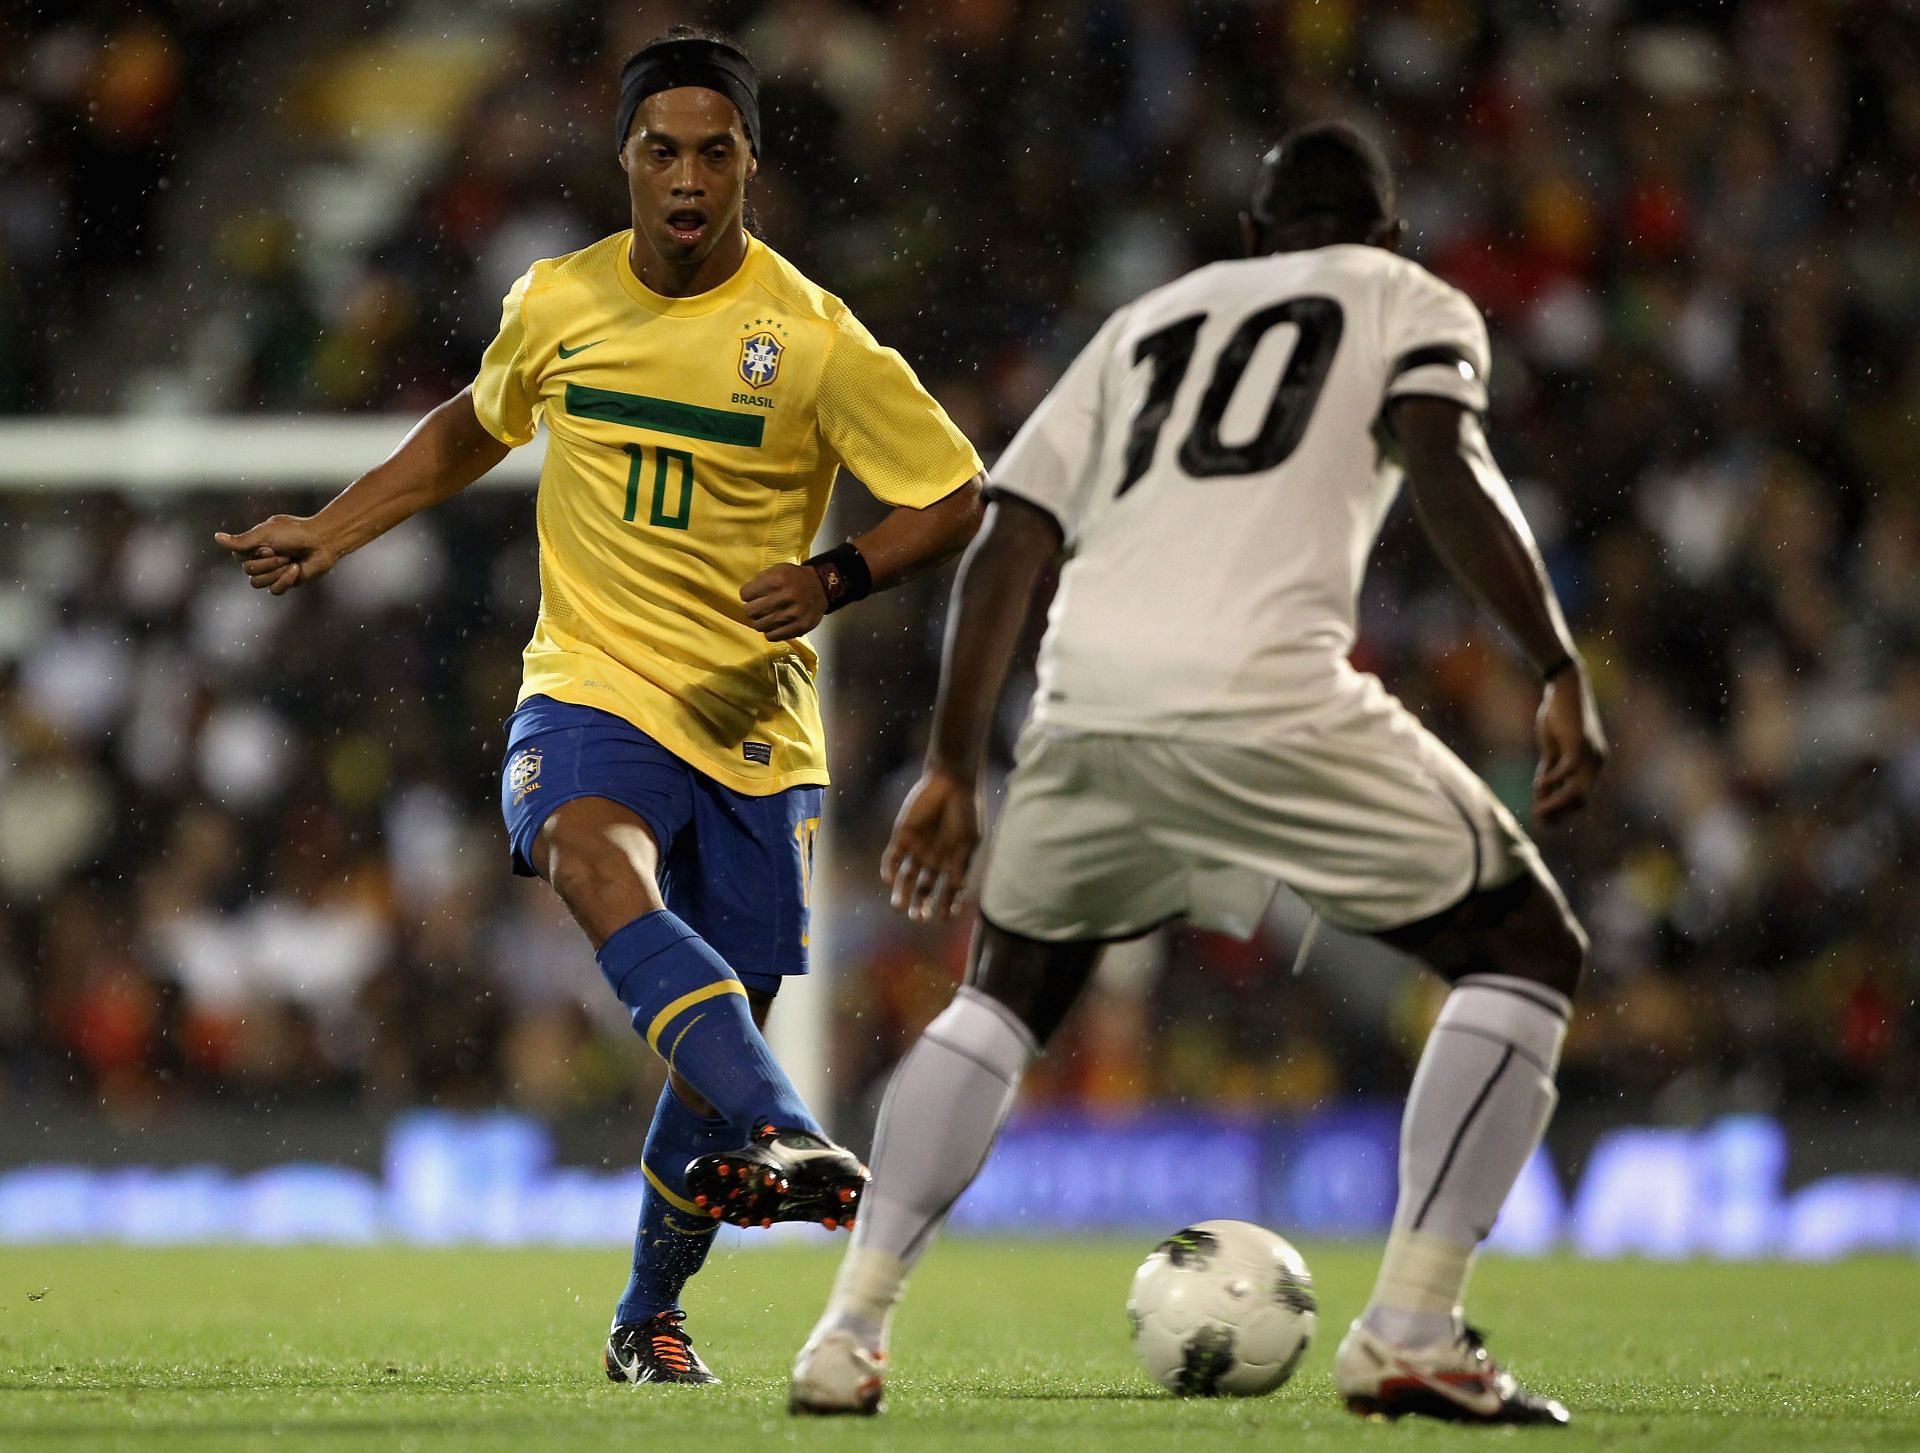 Ronaldinho playing for Brazil against Ghana